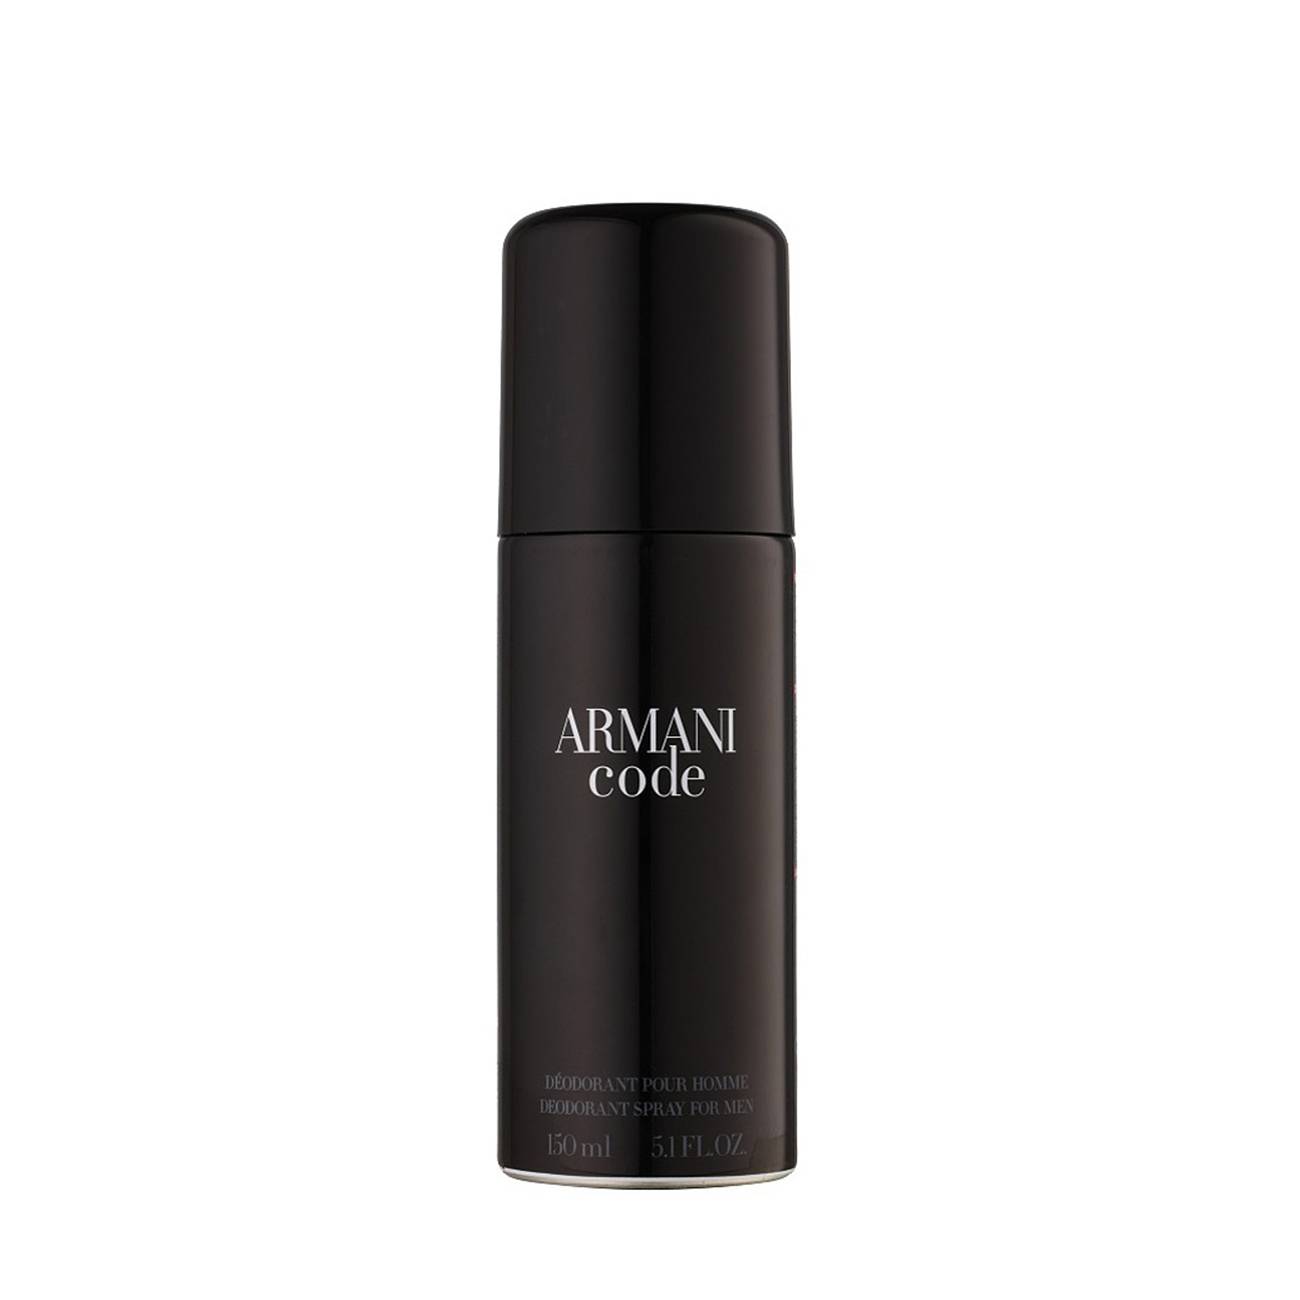 Armani Code Spray 150 ml Giorgio Armani bestvalue.eu imagine noua